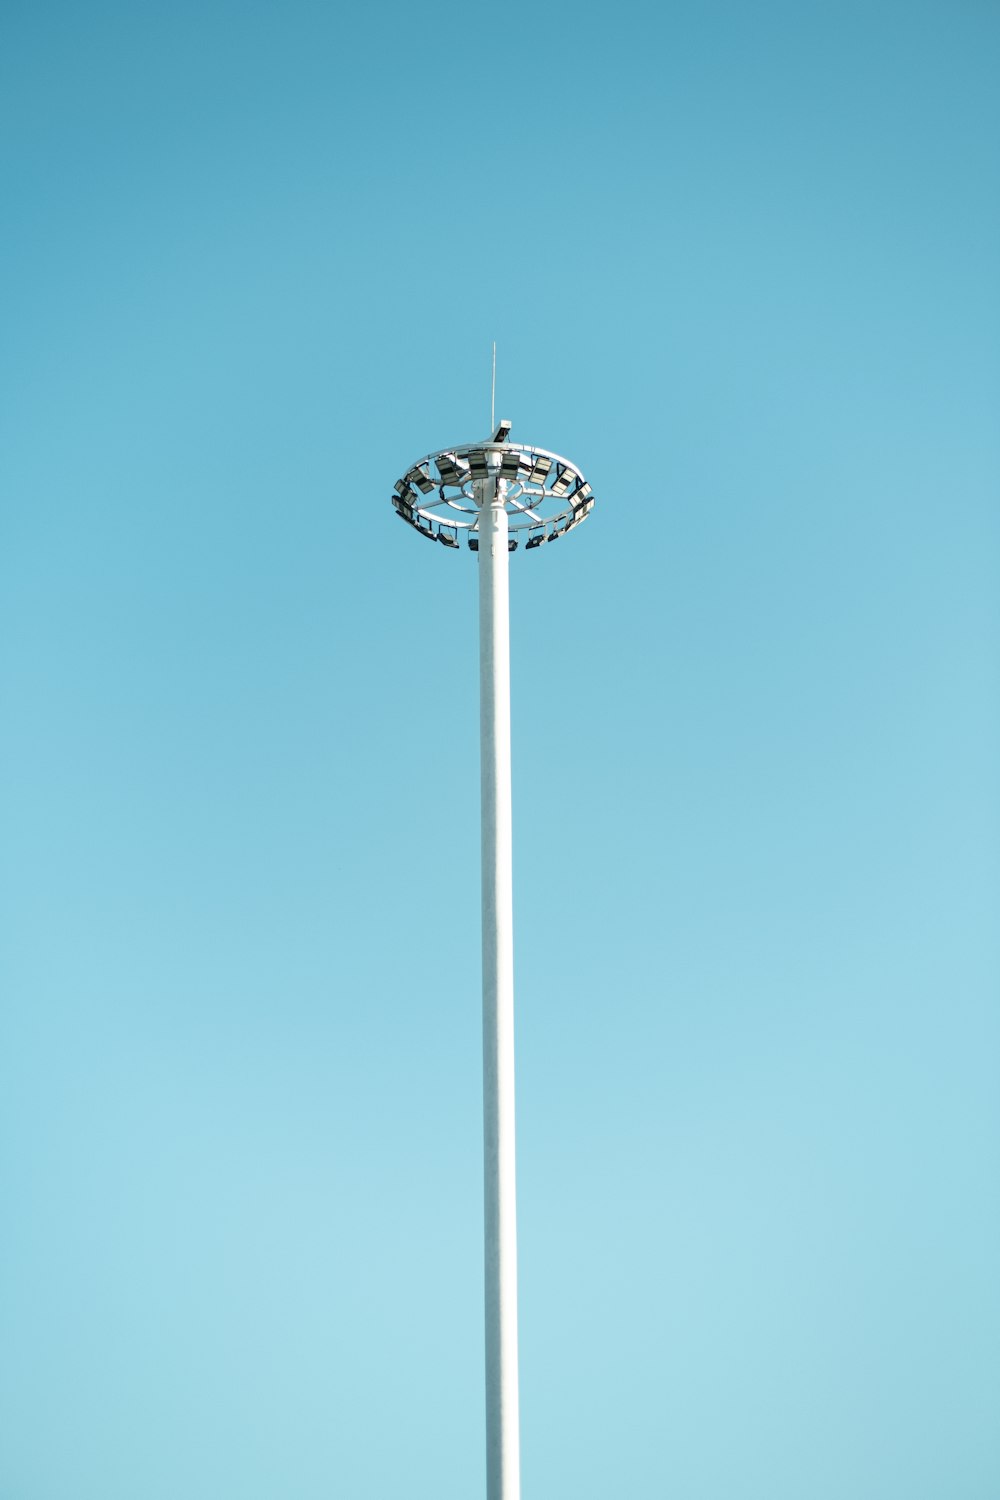 a tall antenna on a pole